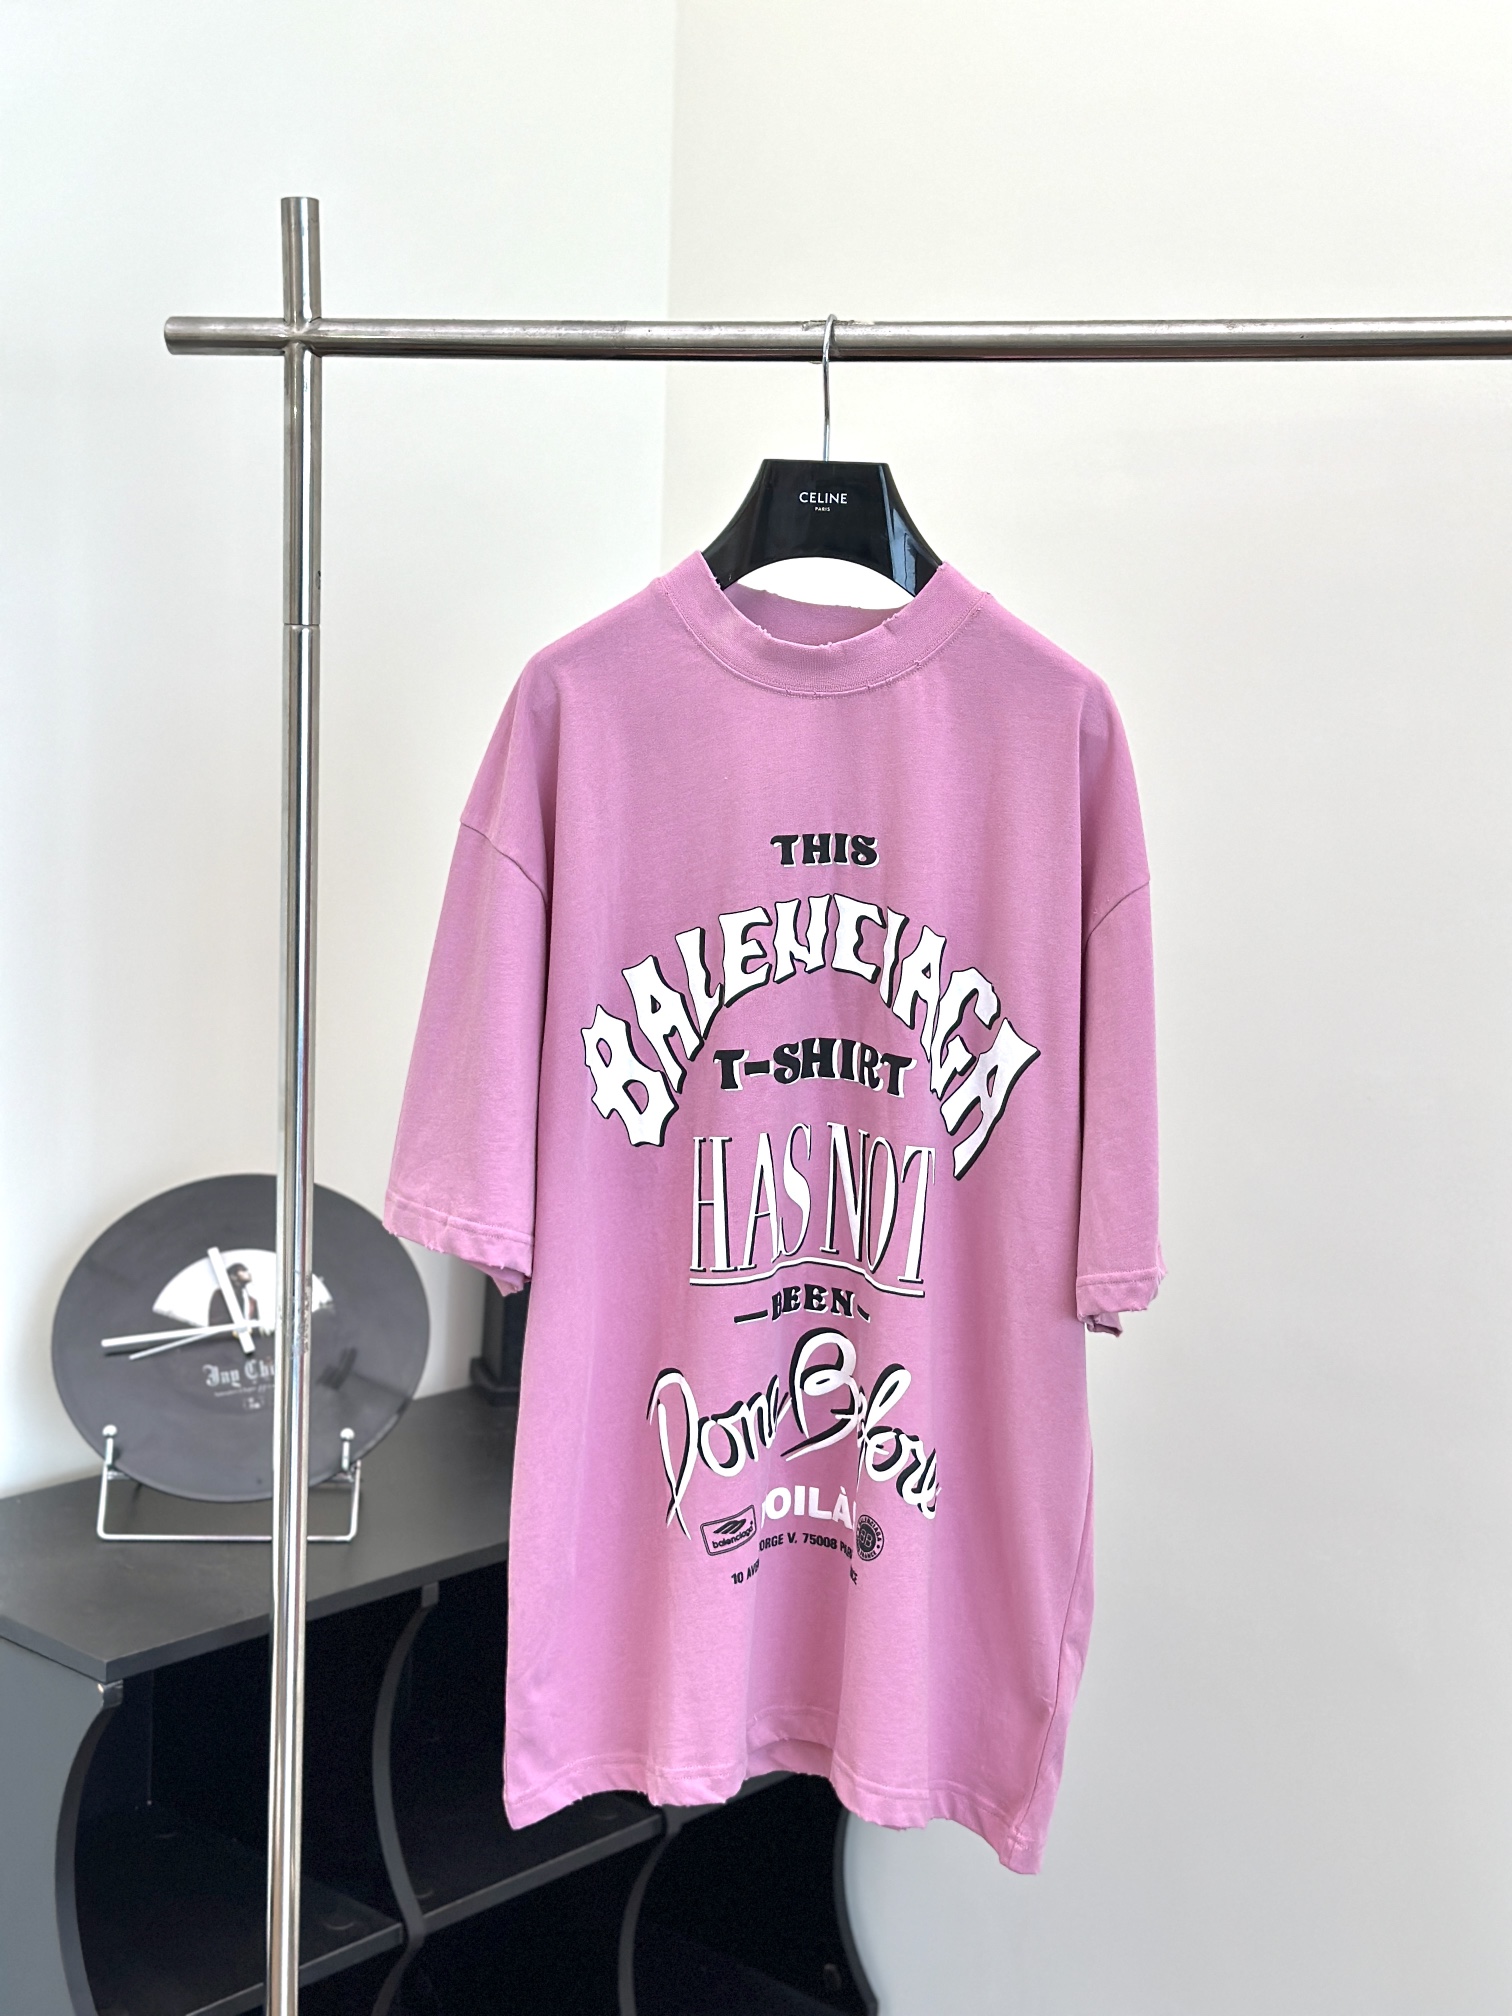 Balenciaga Clothing T-Shirt Pink Printing Cotton Short Sleeve